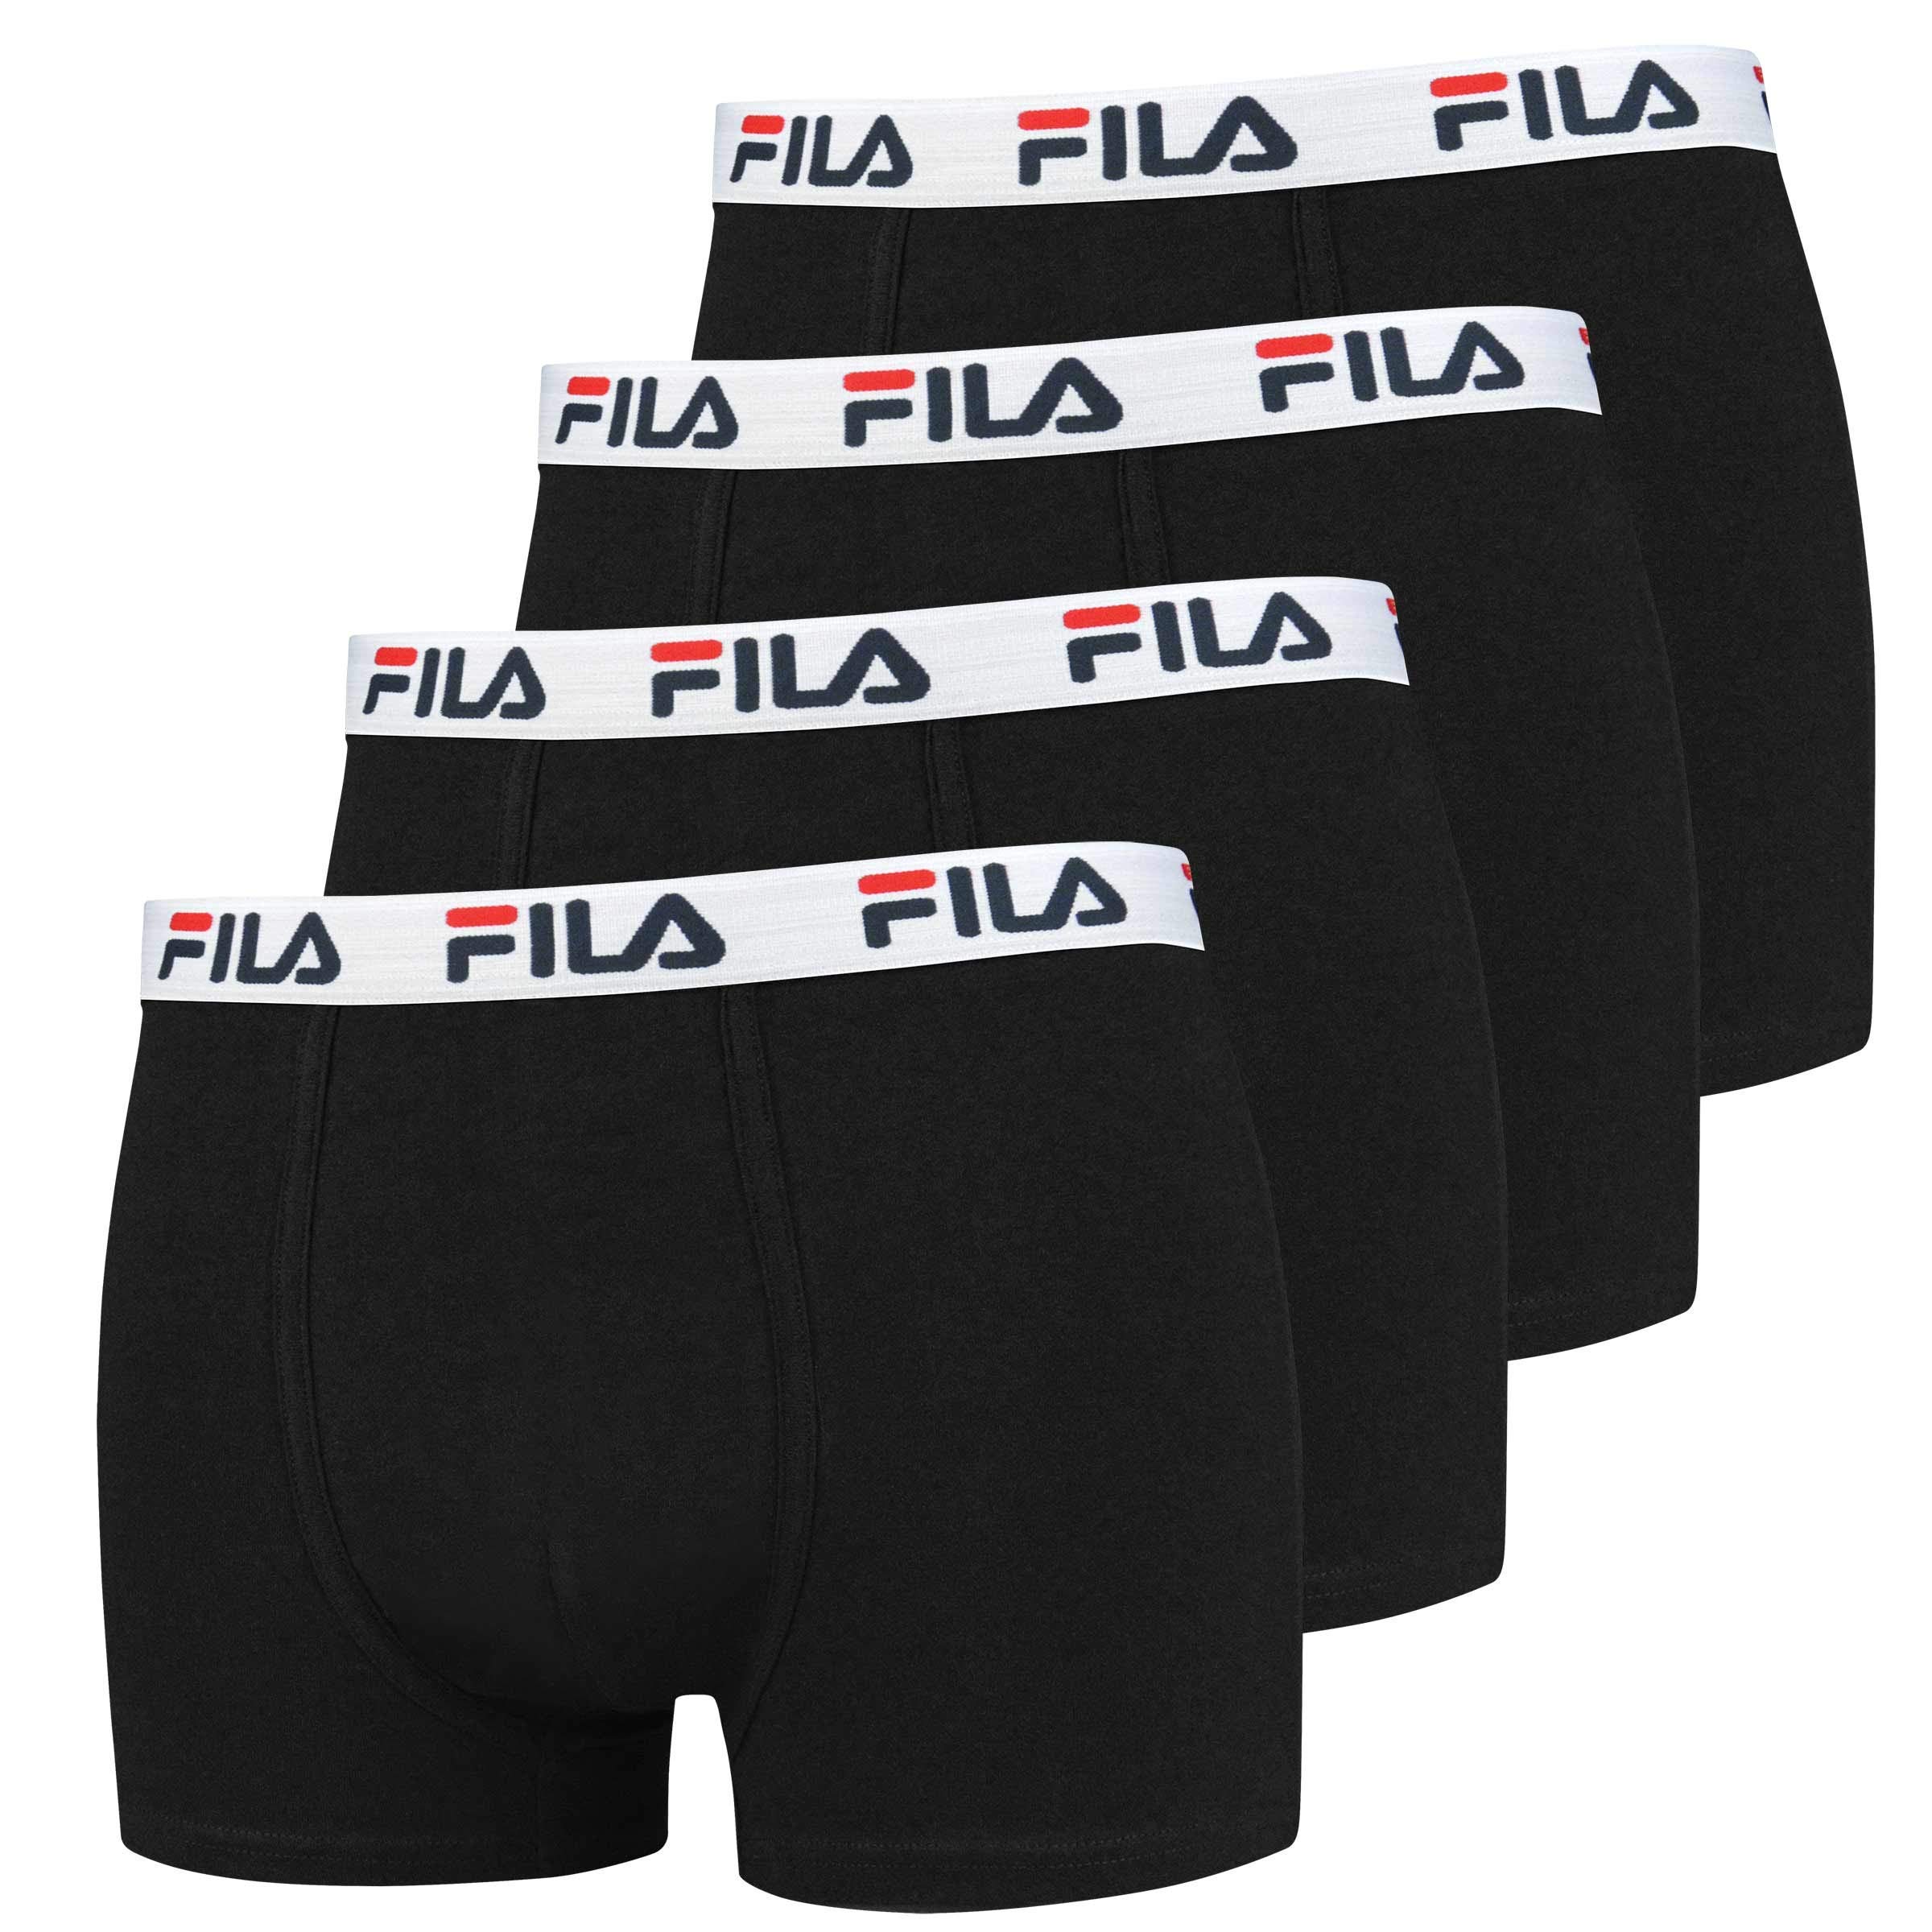 FILA 4er Vorteilspack Herren Boxershorts - Logo Pants - Einfarbig - viele Farben (Schwarz, 2XL - 4er Pack)